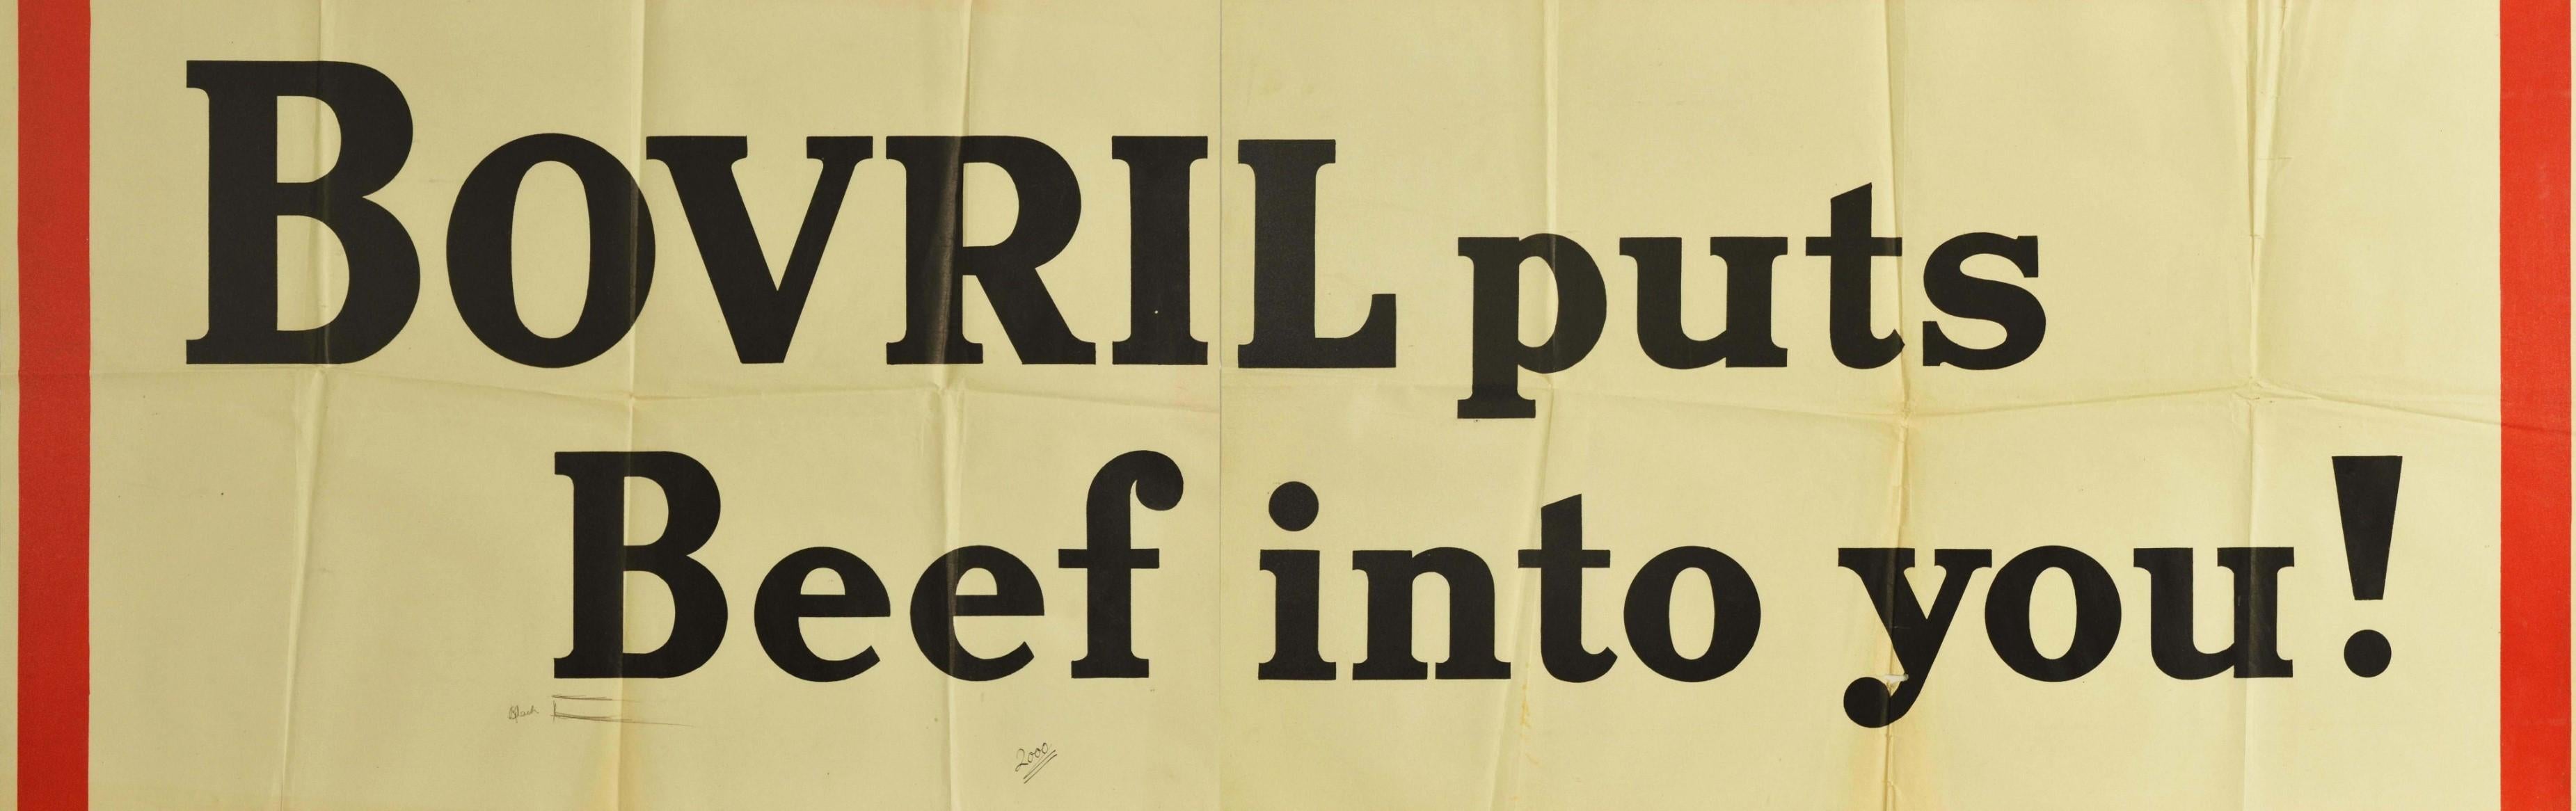 Originales Vintage-Werbeplakat für Bovril - Bovril bringt Rindfleisch in dich! - mit fetten schwarzen Buchstaben auf weißem Hintergrund in einem dicken roten Rahmen. Diese Kampagne wurde in den 1930er Jahren in Großbritannien gedruckt und ähnelt mit